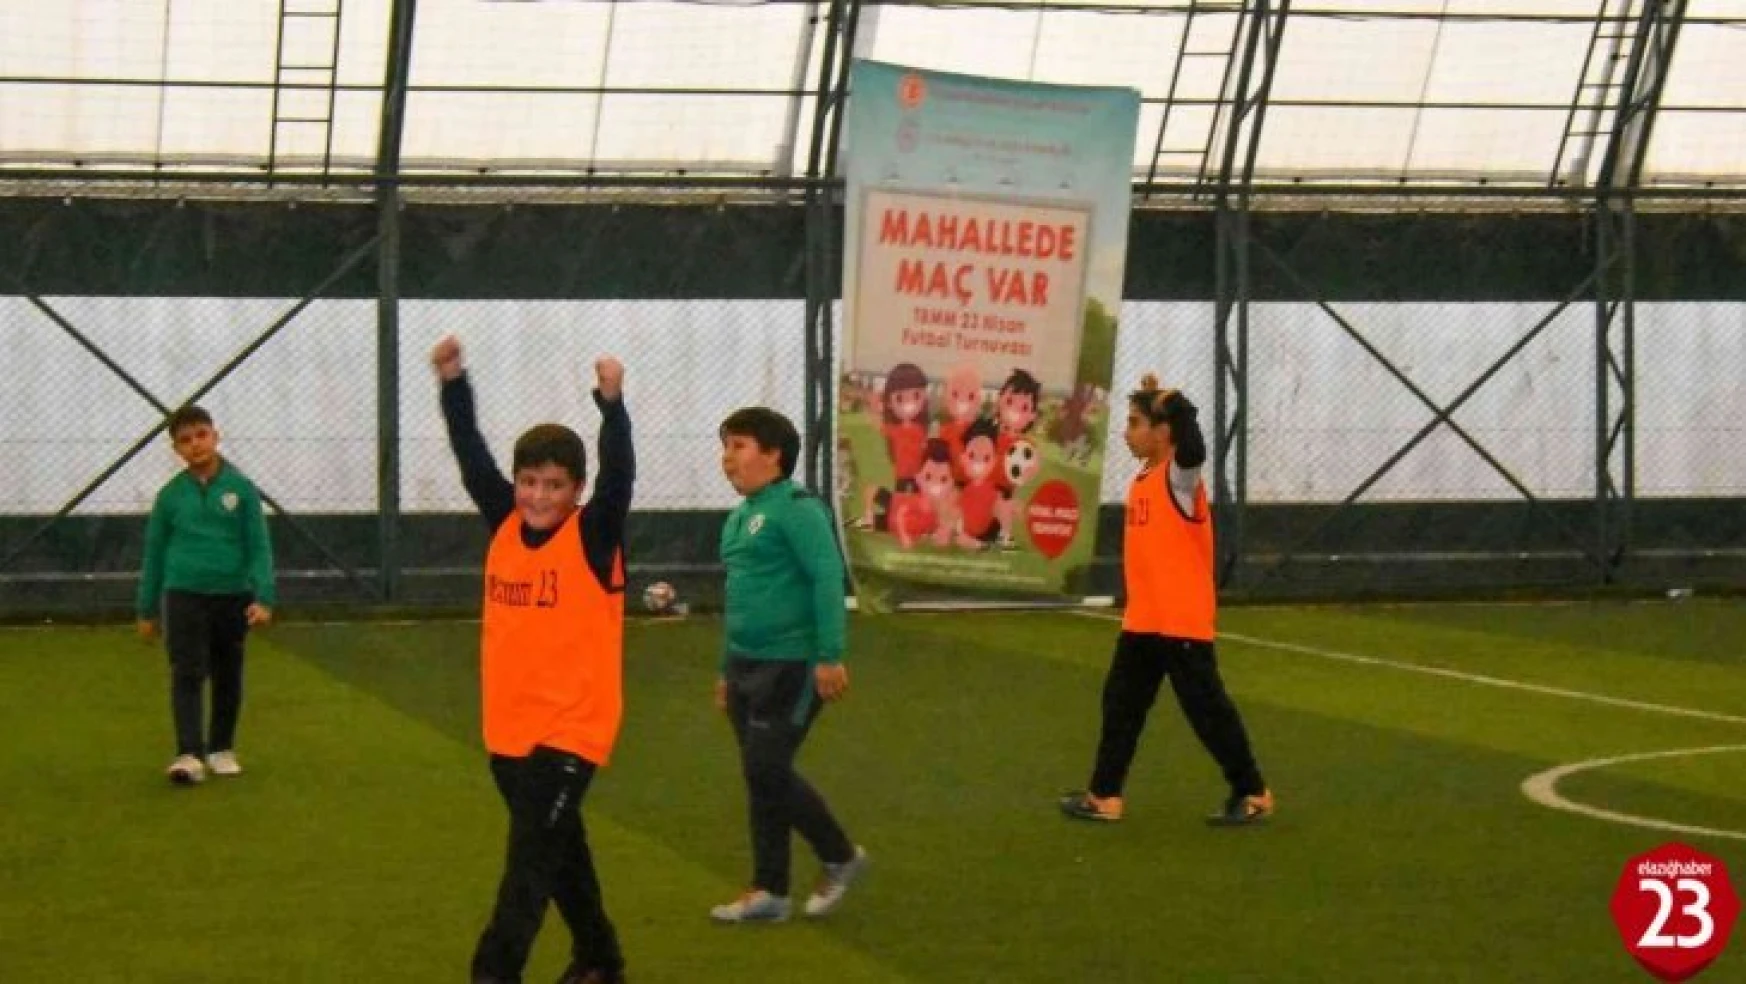 Mahallede Maç Var Analig Futbol Turnuvası Elazığ'da başladı